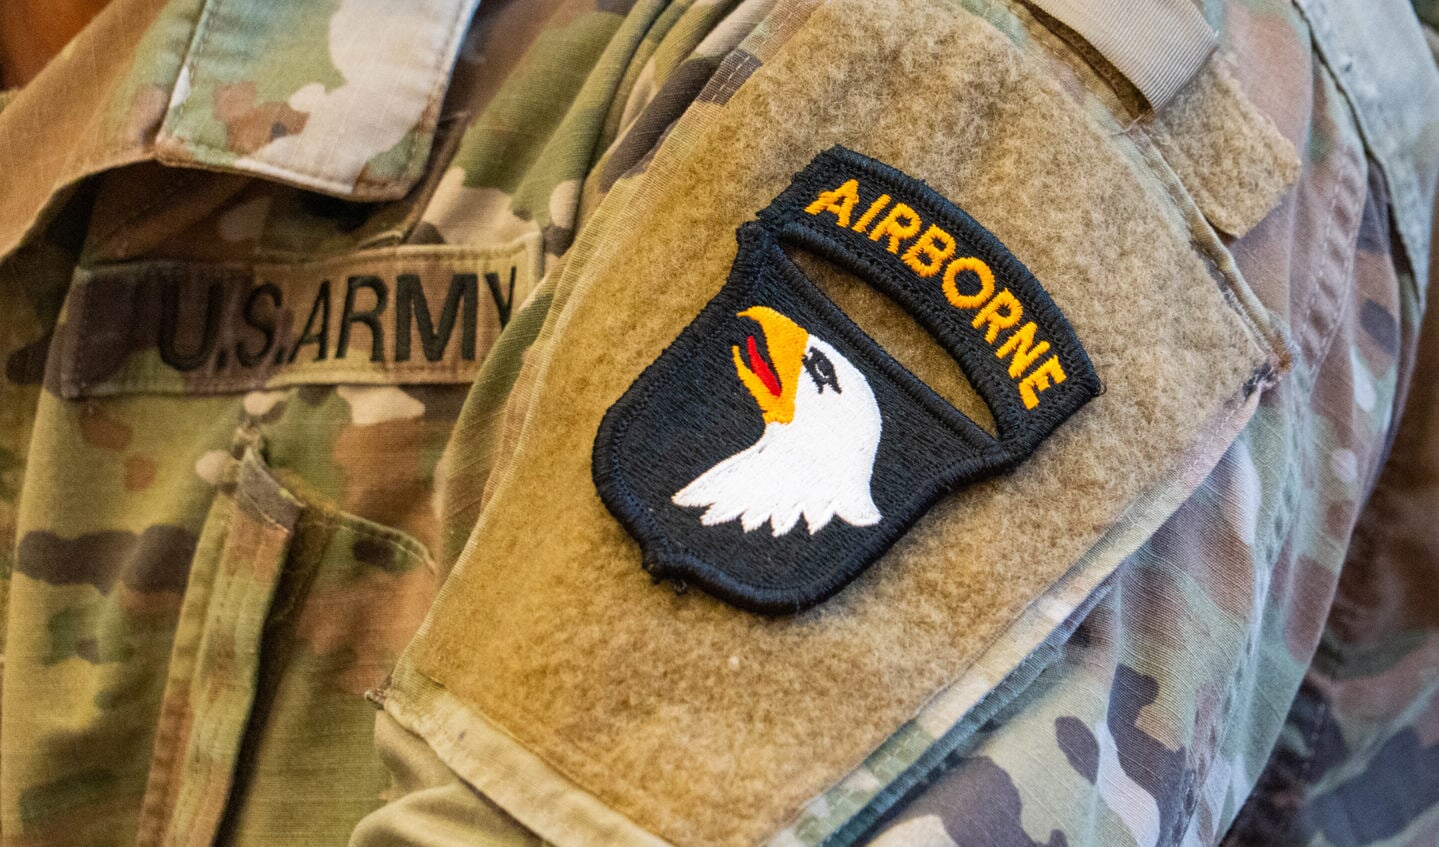 101st Aiborne Division op bezoek in Wijbosch.